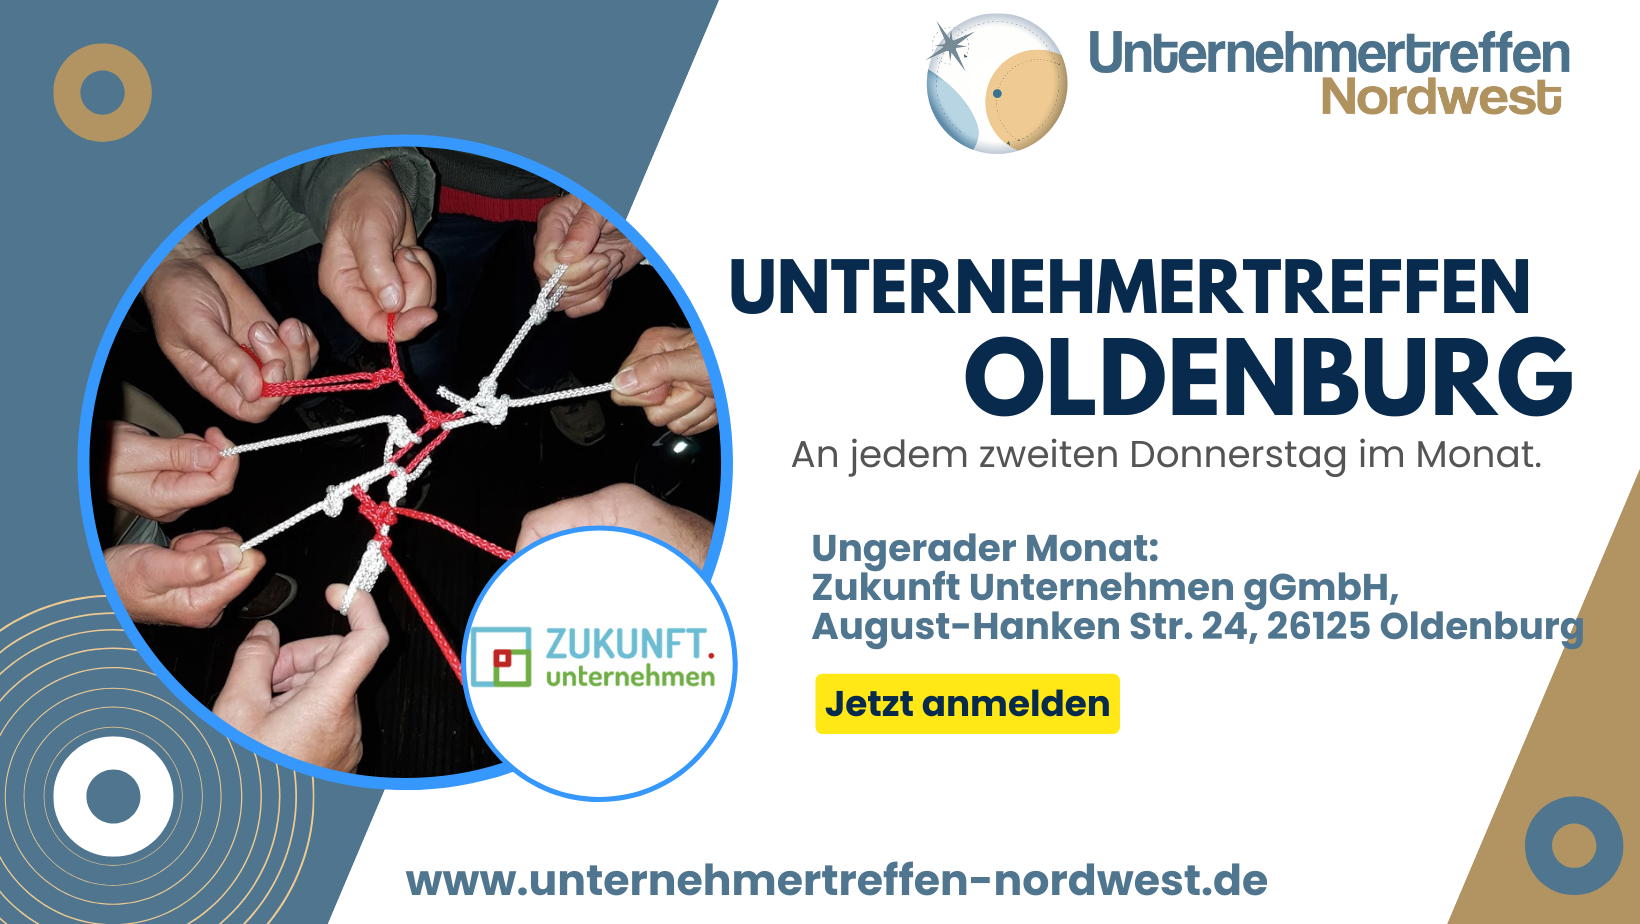 Unternehmertreffen Nordwest Treffen Oldenburg Zukunft Unternehmen